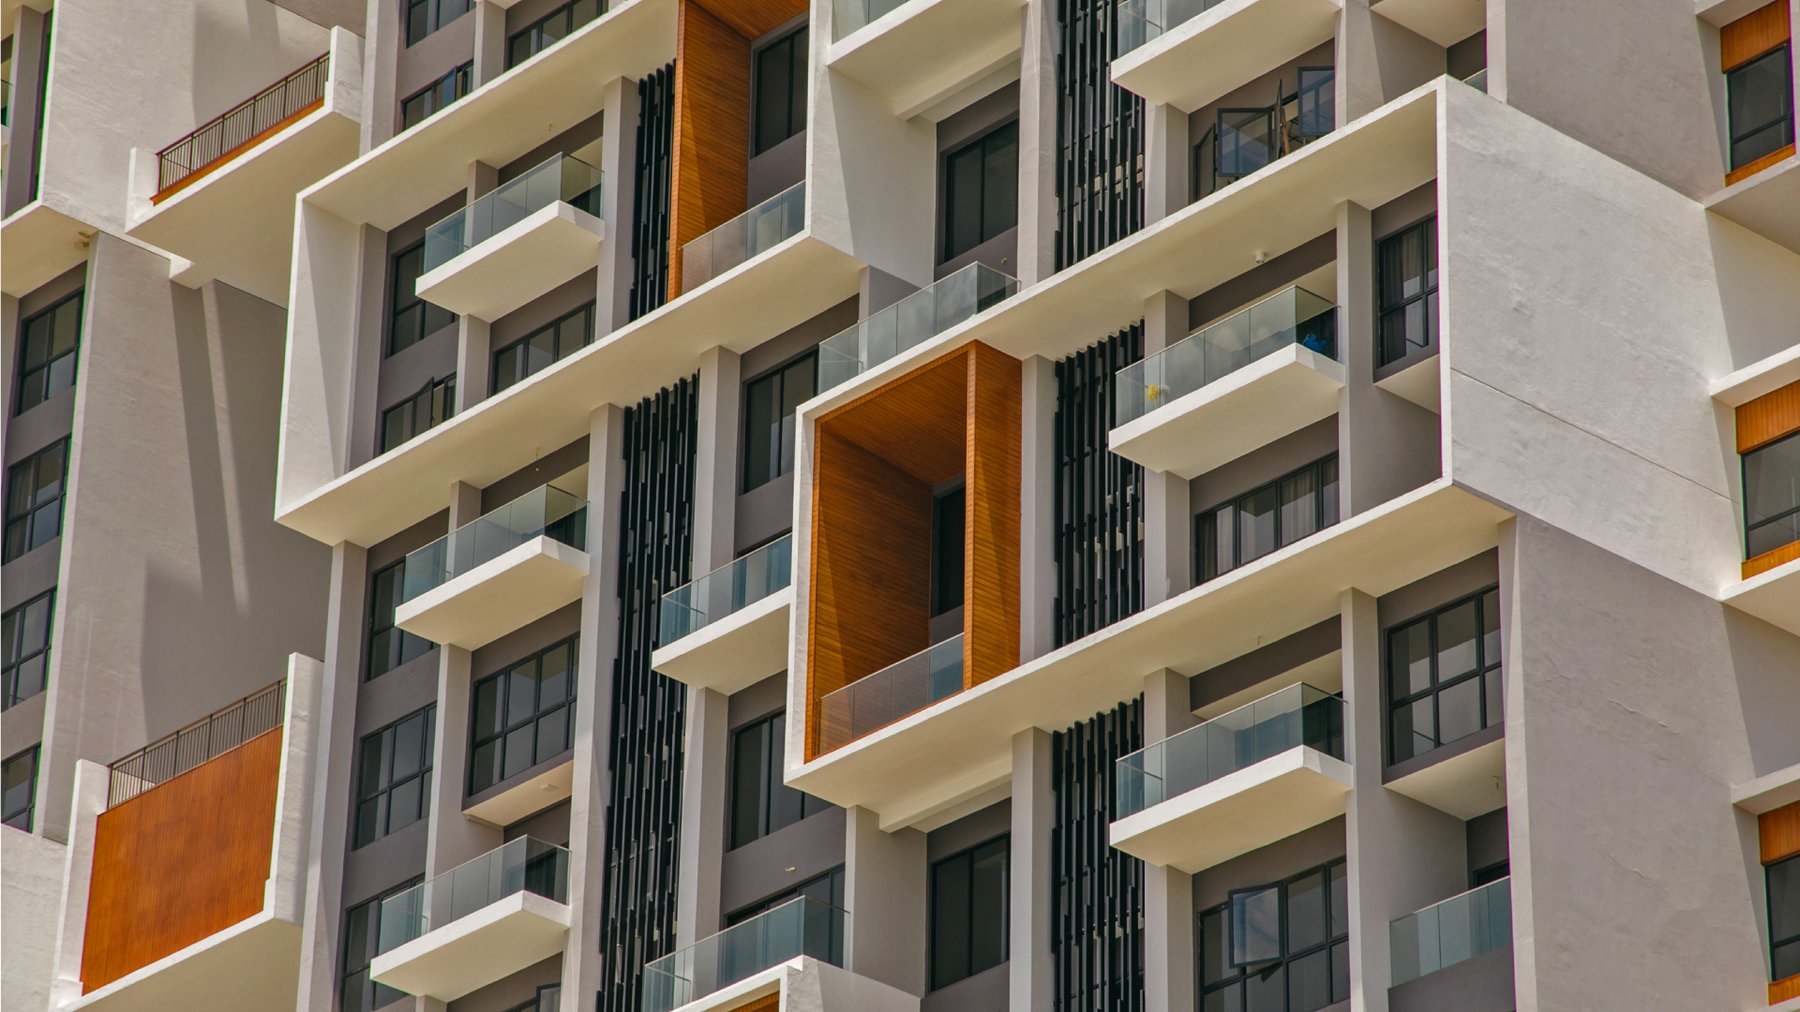 Domicile | High-rise residences designed to enrich lives.